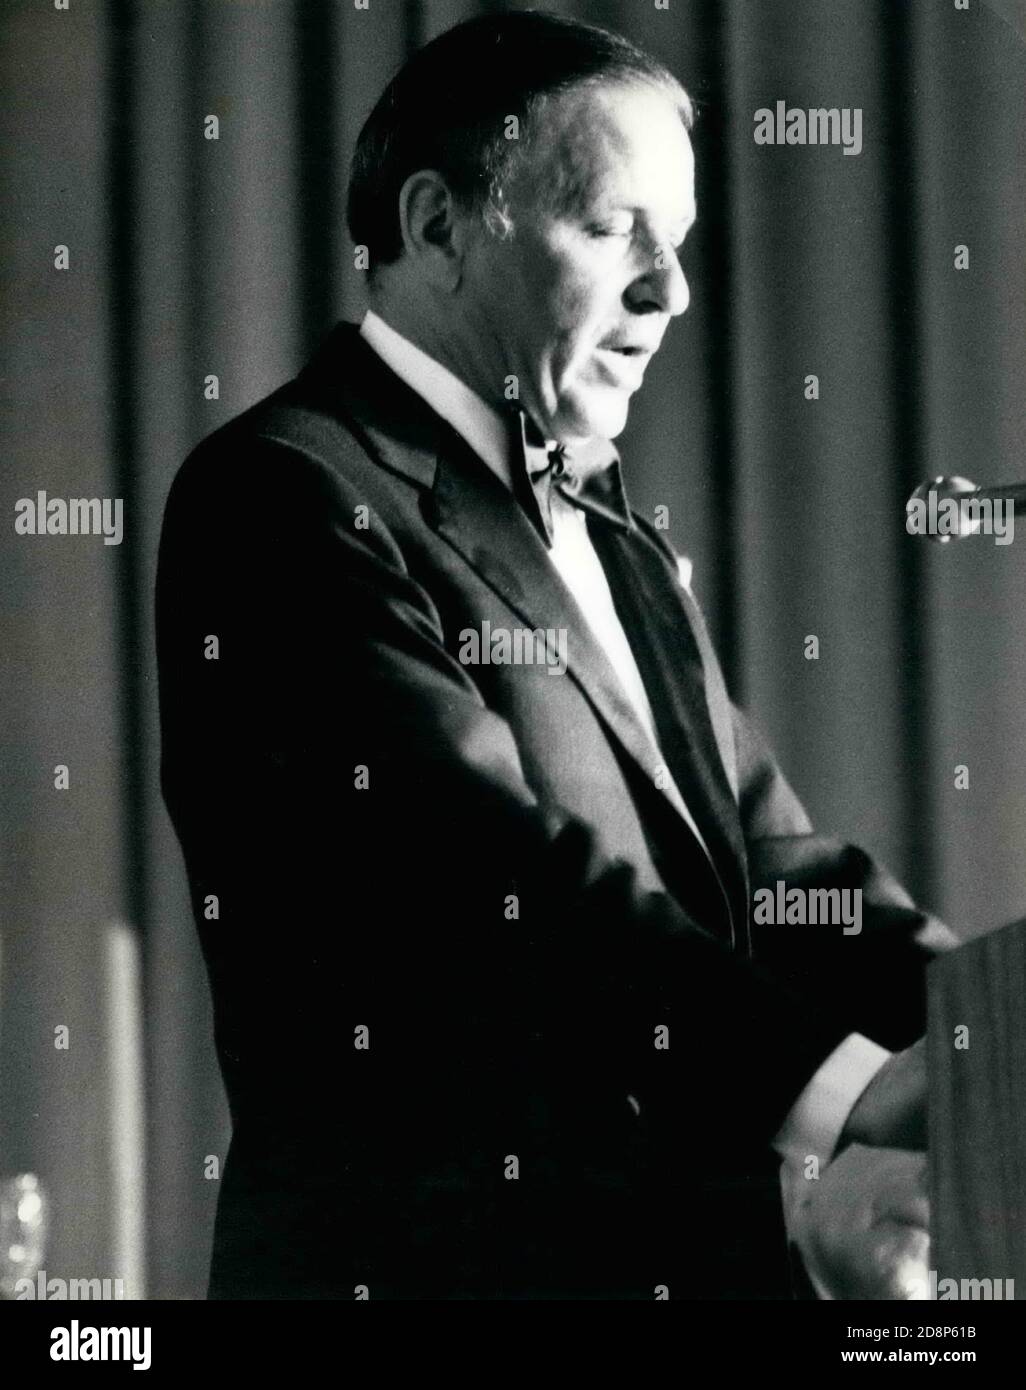 28 marzo 1973 - New York, New York, USA - FRANK SINATRA parla sul podio in occasione di un evento sconosciuto. (Credit Image: © Keystone Pictures USA/ZUMAPRESS.com) Foto Stock